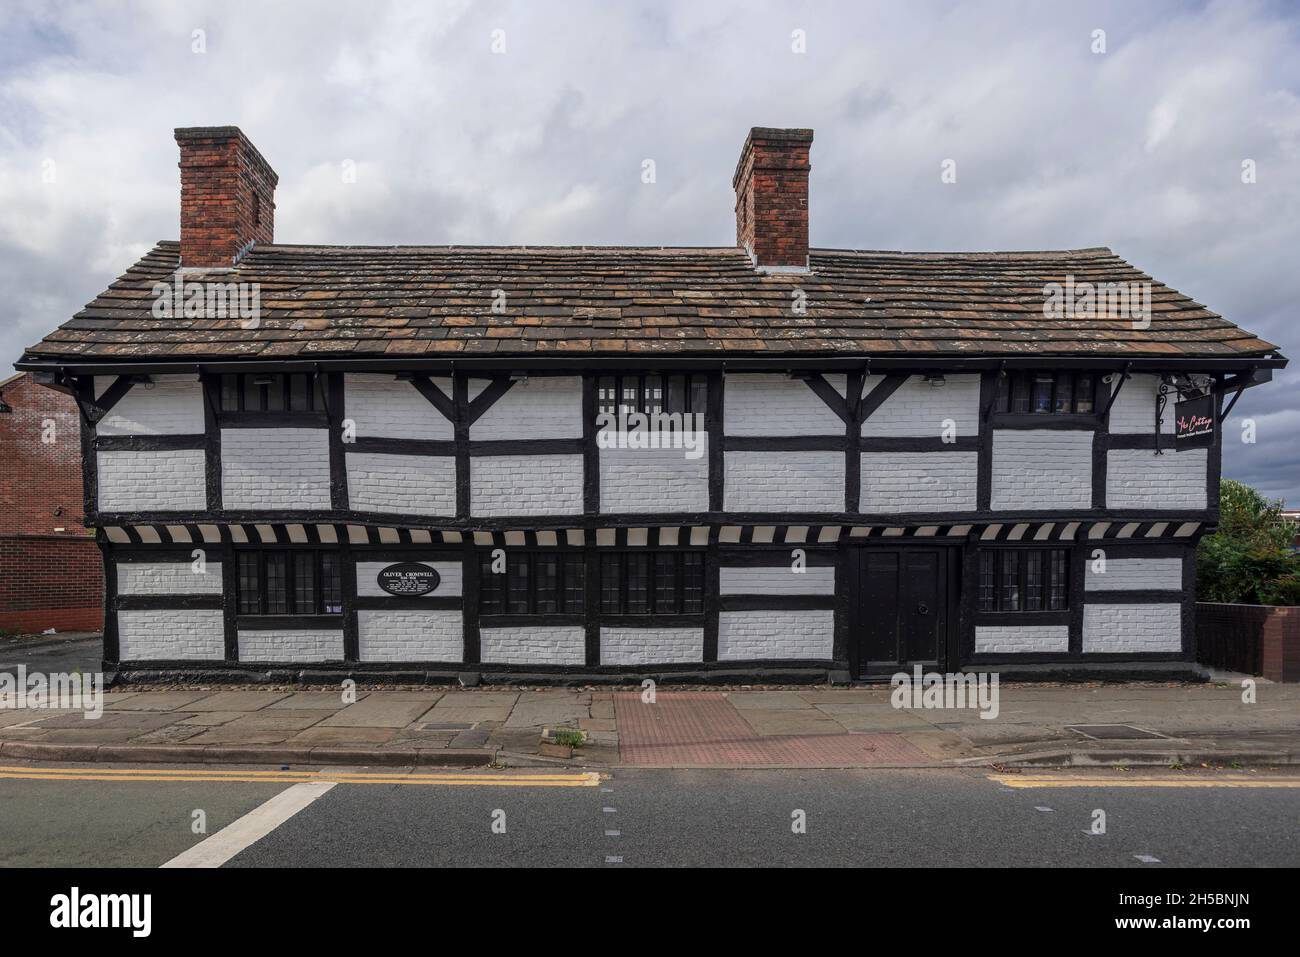 El restaurante indio Cottage en Warrington, el edificio de entramado de madera está unido a Oliver Cromwell en la guerra civil inglesa y es un edificio catalogado. Foto de stock